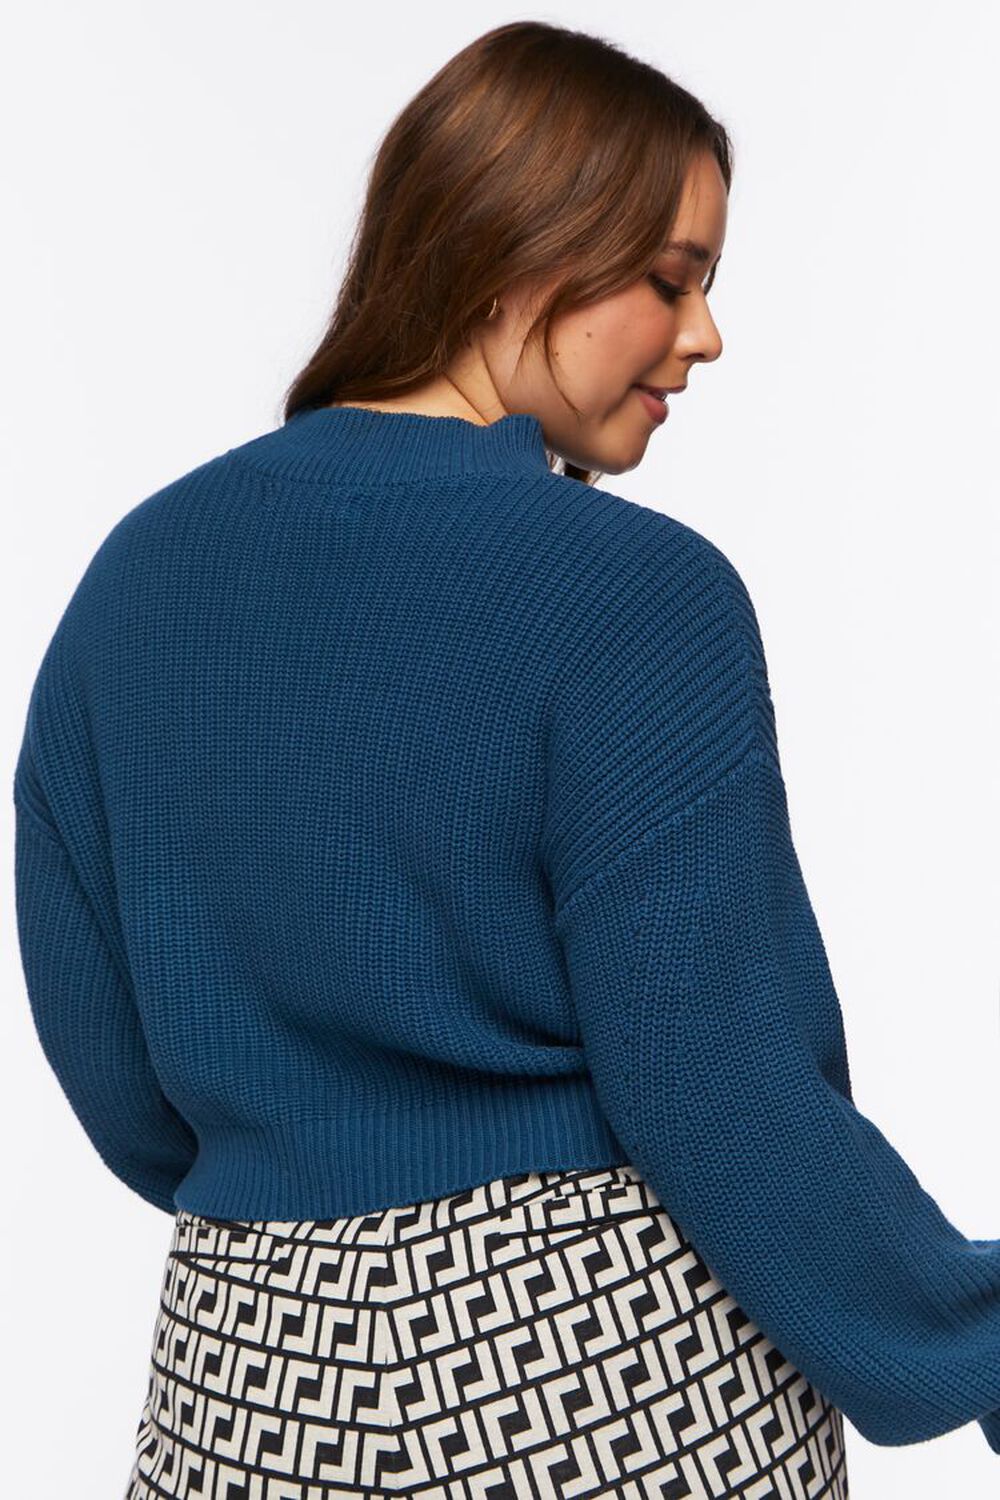 NAUTICAL BLUE Plus Size Ribbed Mock Neck Sweater, image 3